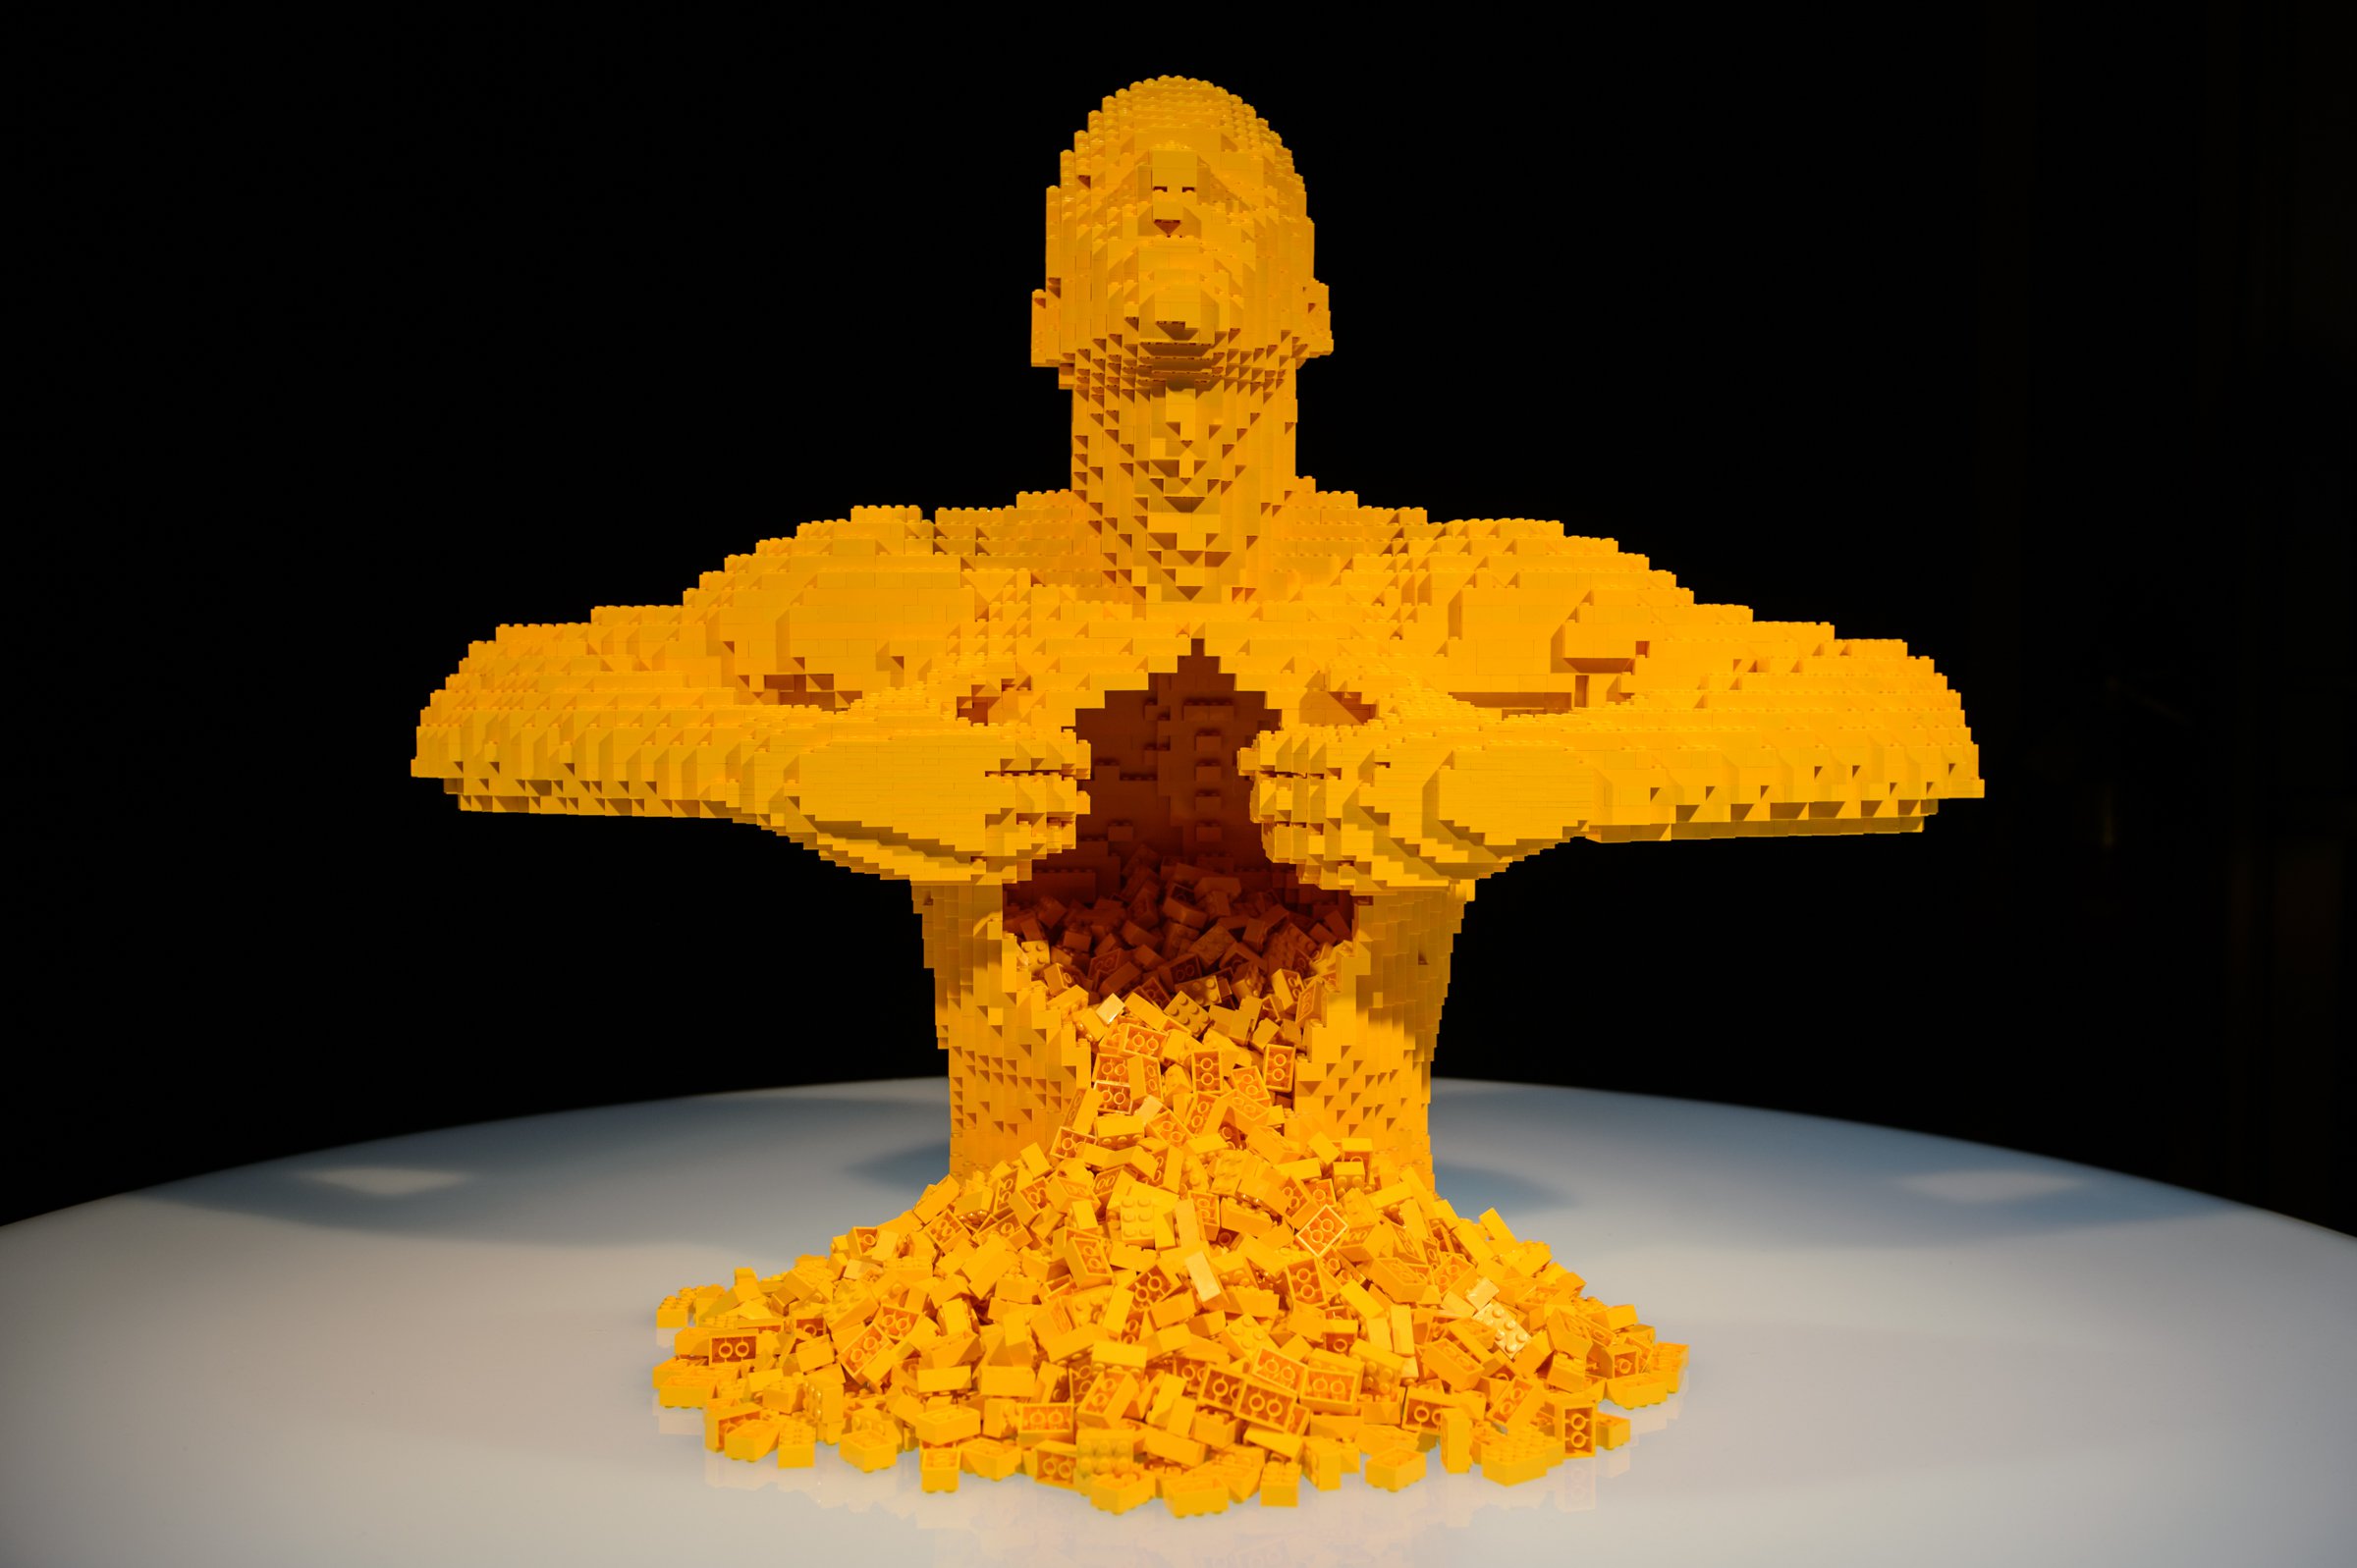 Exposição Com Esculturas Feitas de LEGO 2017 – Comprar Ingressos